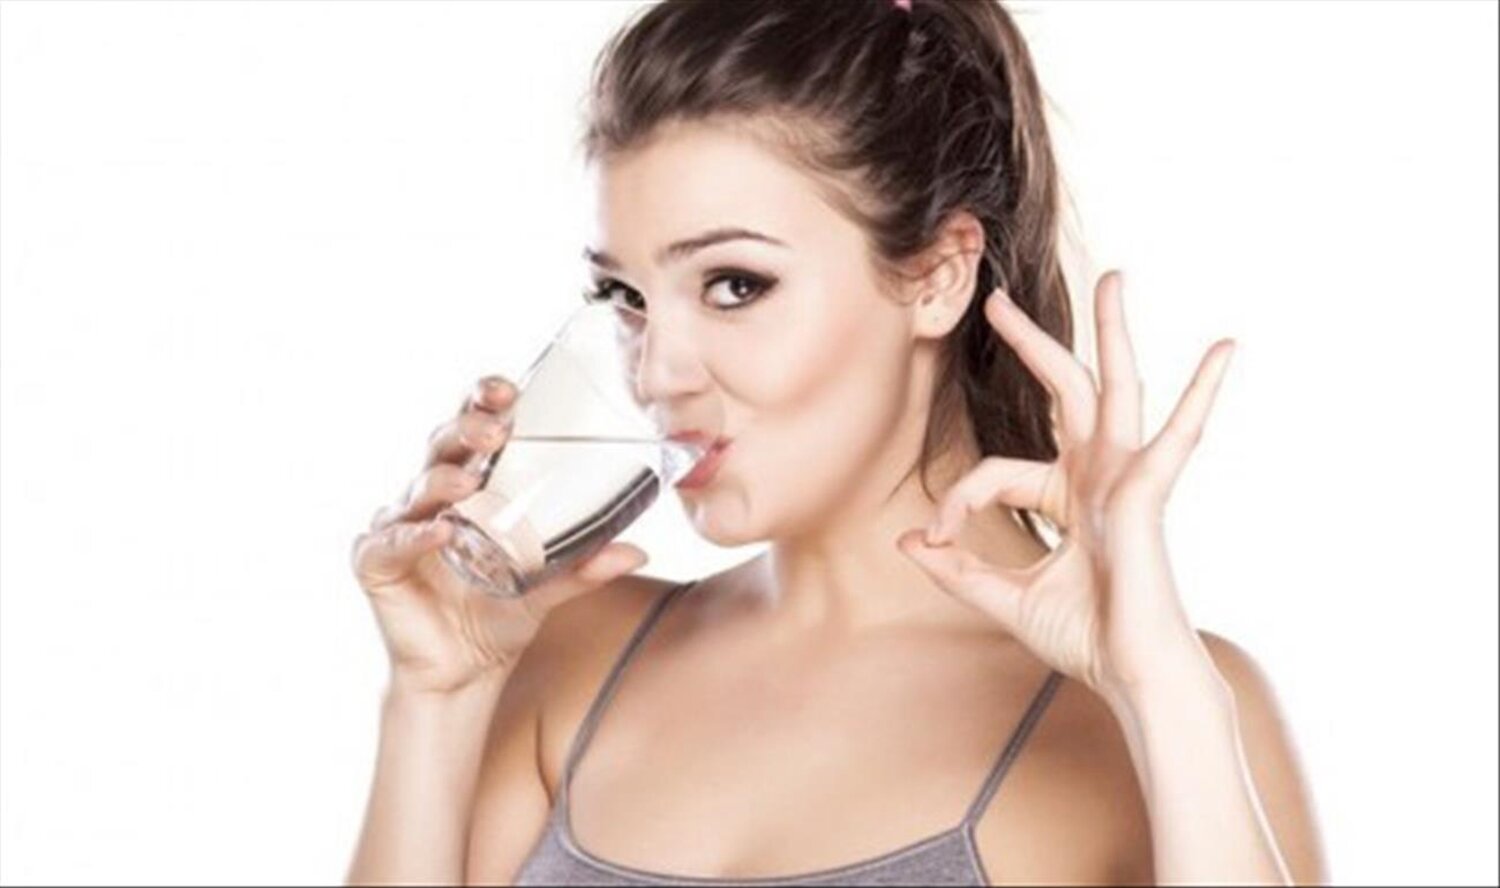 Uống ít nhất 8 ly nước mỗi ngày để việc giảm cân hiệu quả hơn. (Ảnh: Pinterest)